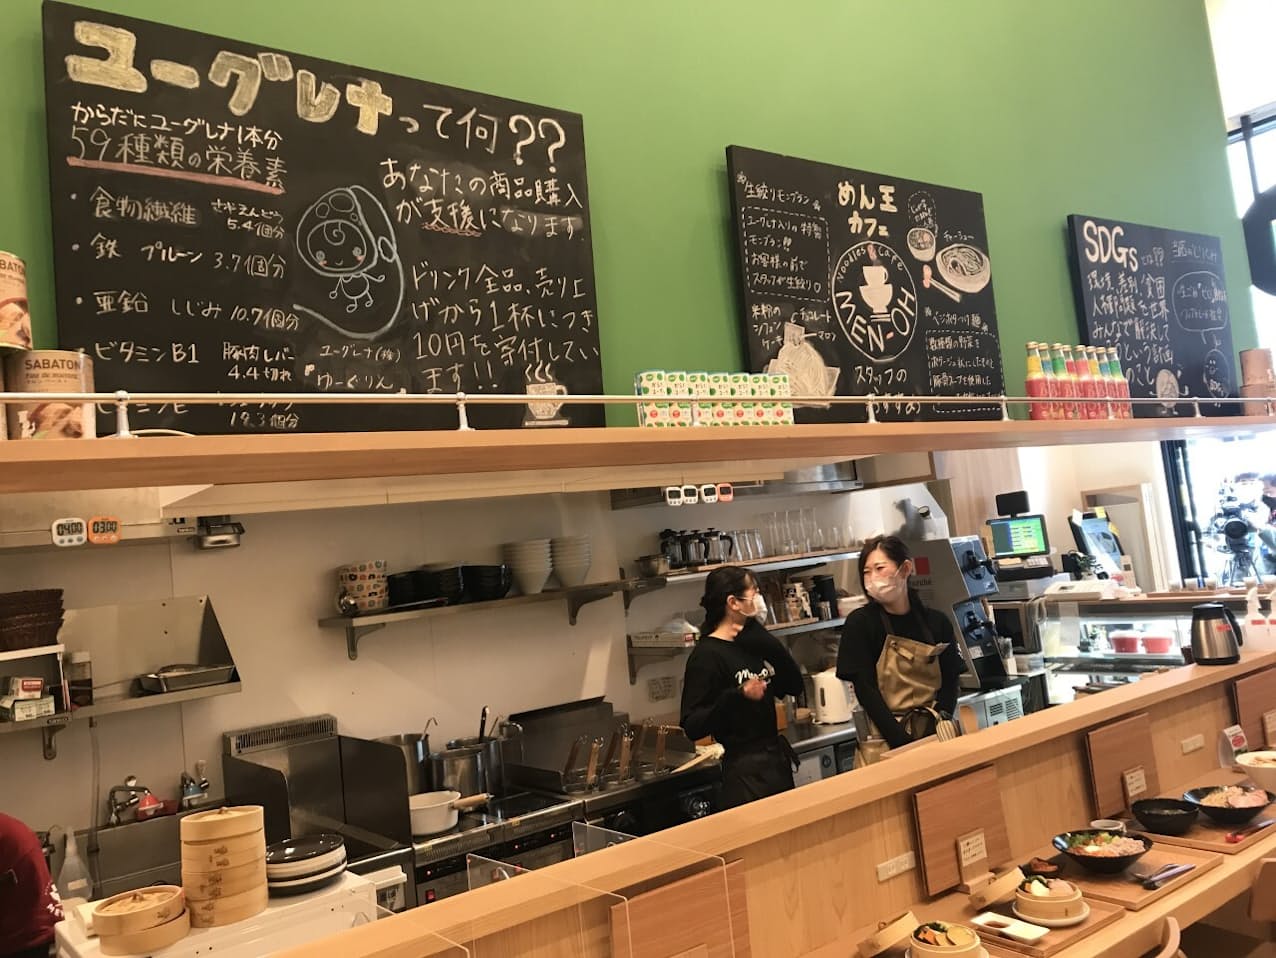 千葉県柏市のラーメン店が、川崎さんらの助言を受けながら開業した新業態店舗